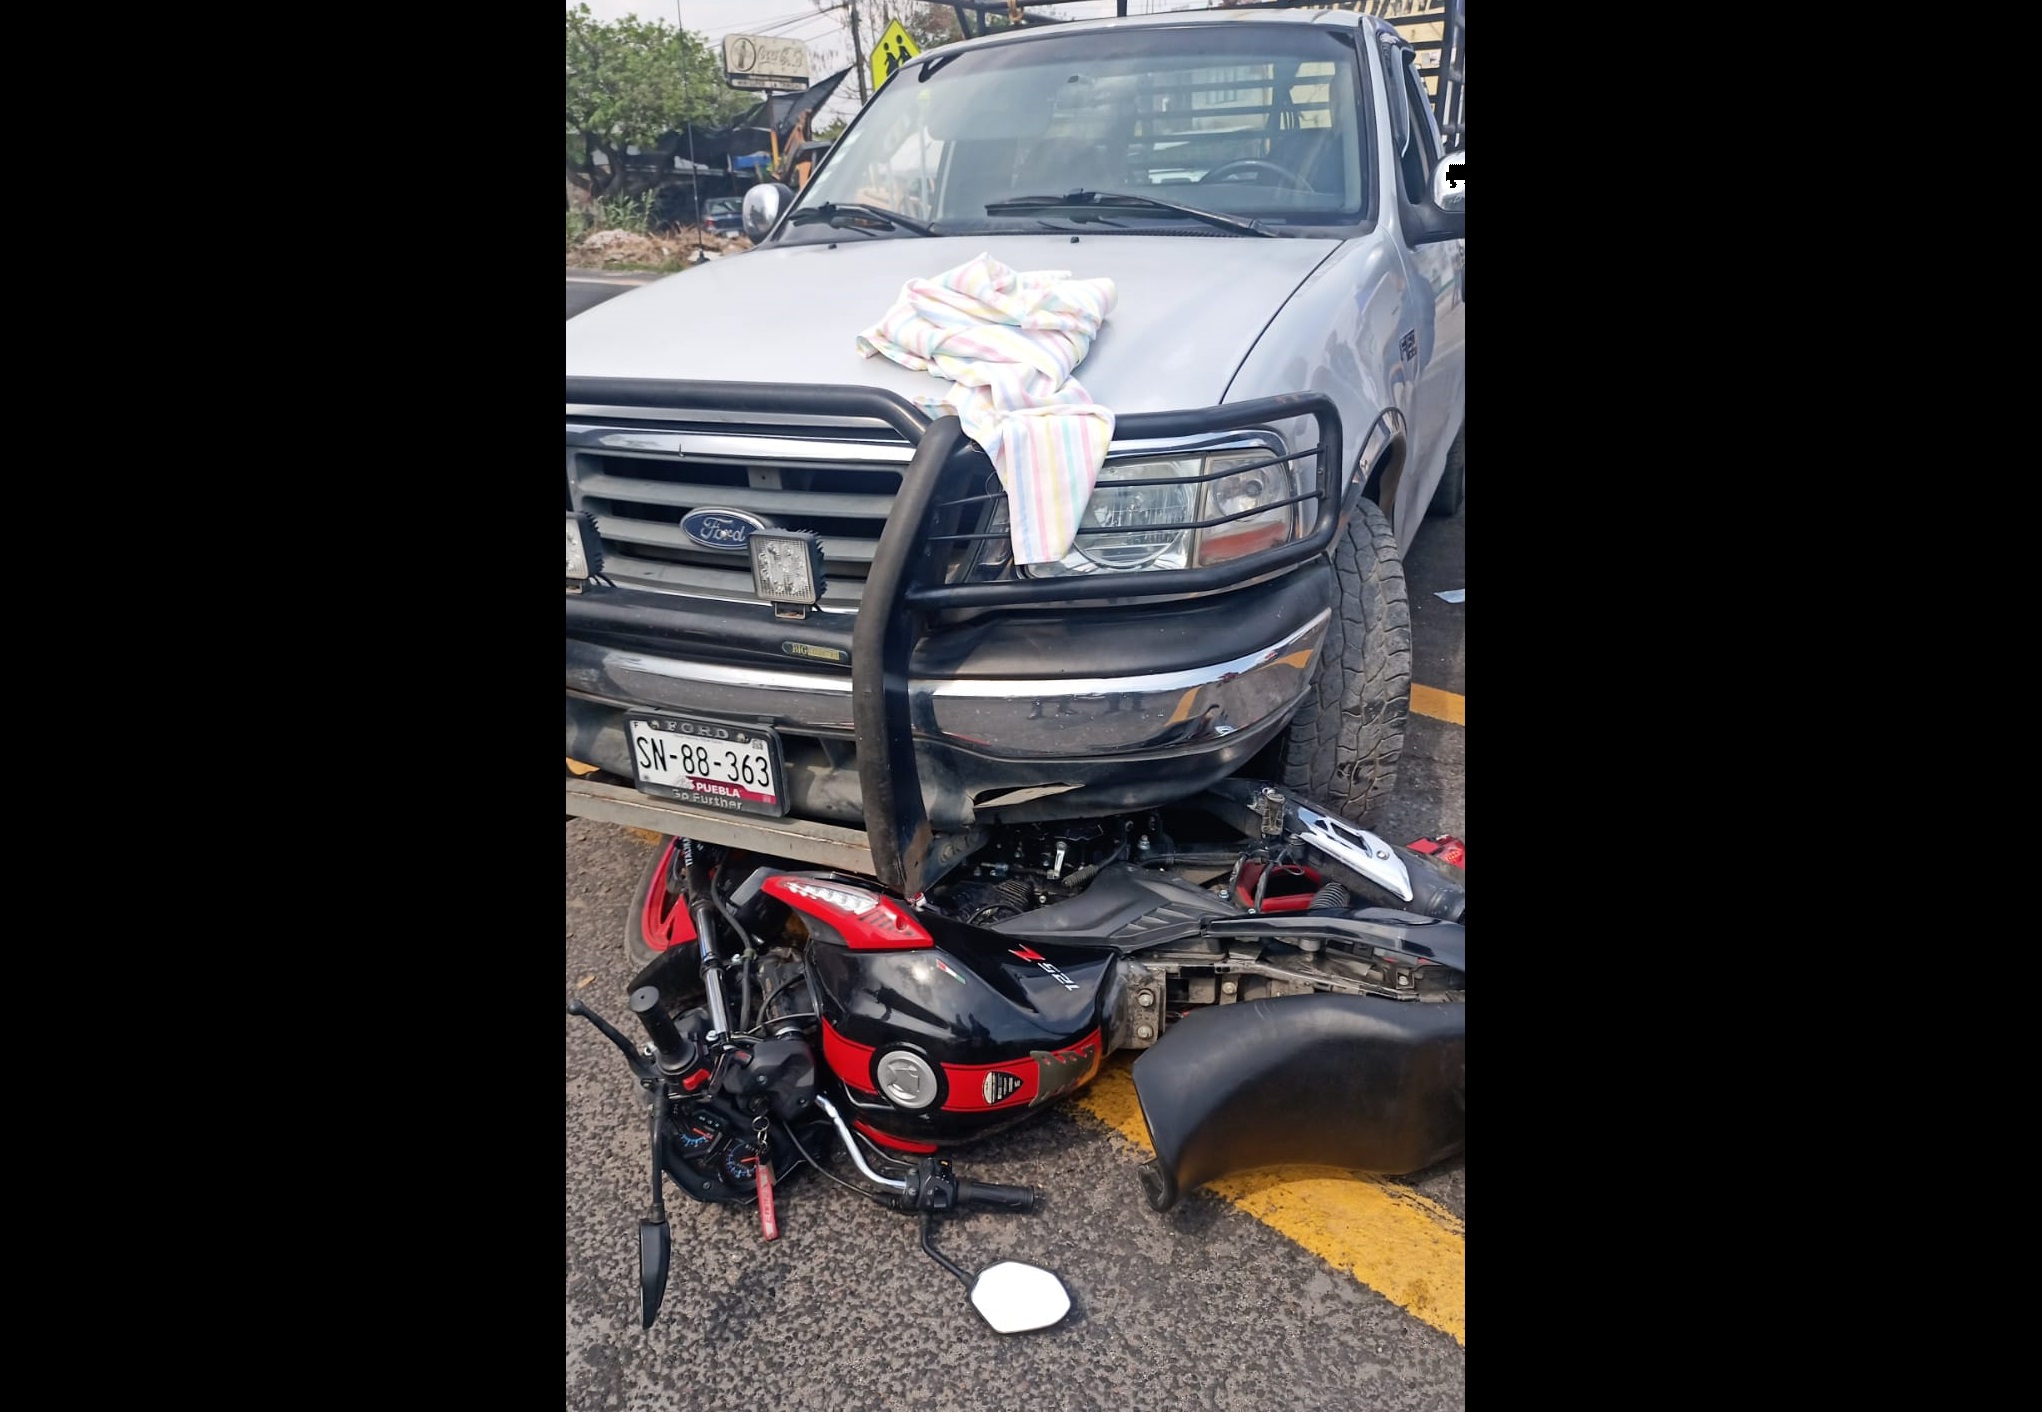 Camioneta prensa una moto en Atlixco; hay dos heridos